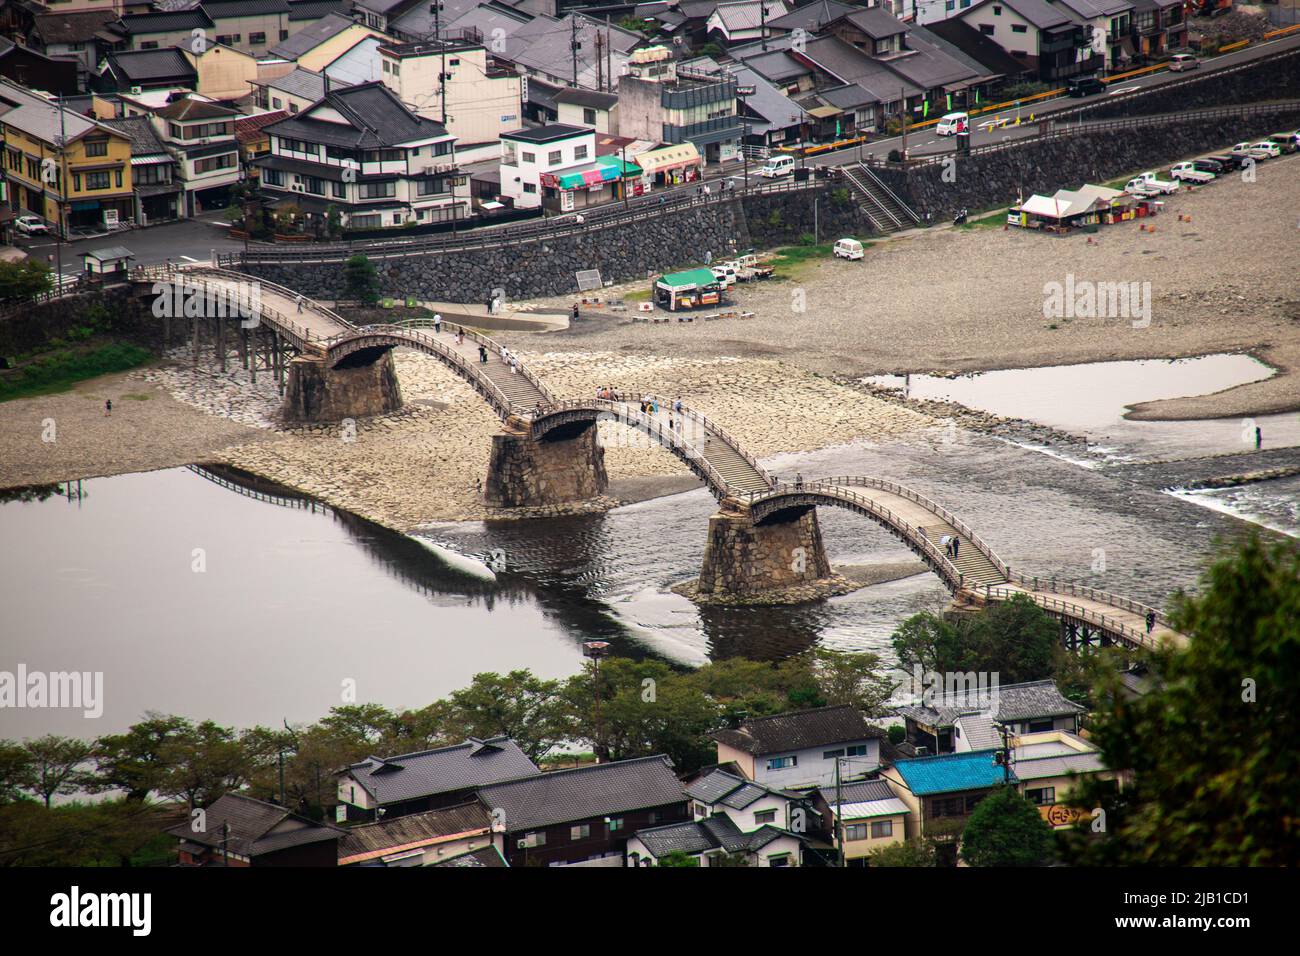 Vista dall'alto del ponte Kintai (Kintaikyo), storico ponte ad arco in legno a Iwakuni, in una giornata nuvolosa. Fu costruito nel 1673, lungo il fiume Nishiki Foto Stock